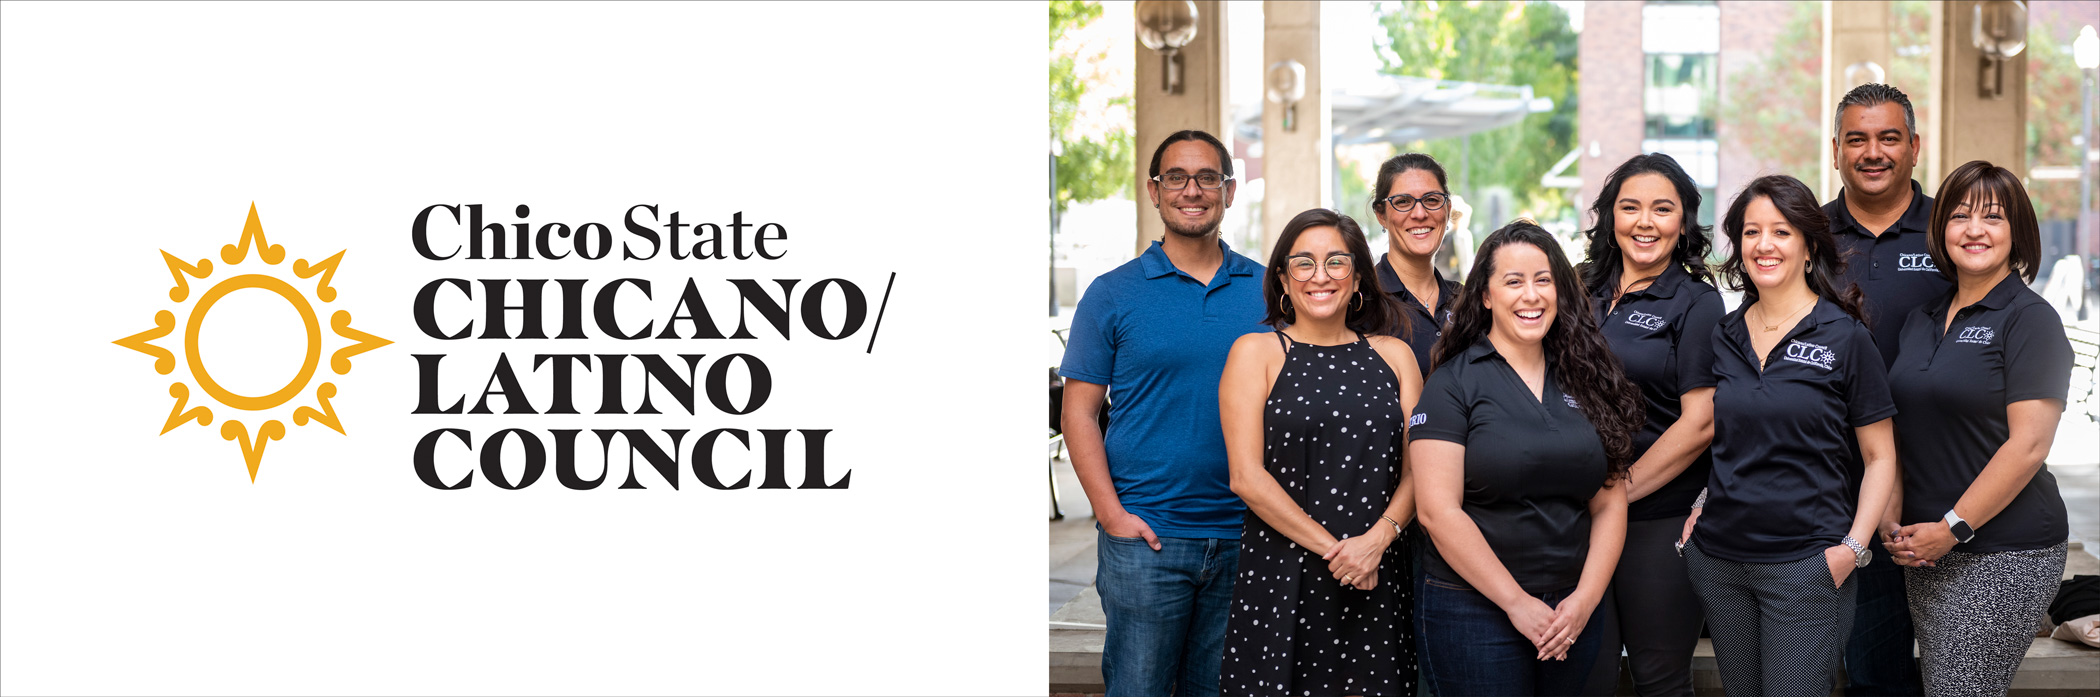 Chico State Chicano/Latino Council